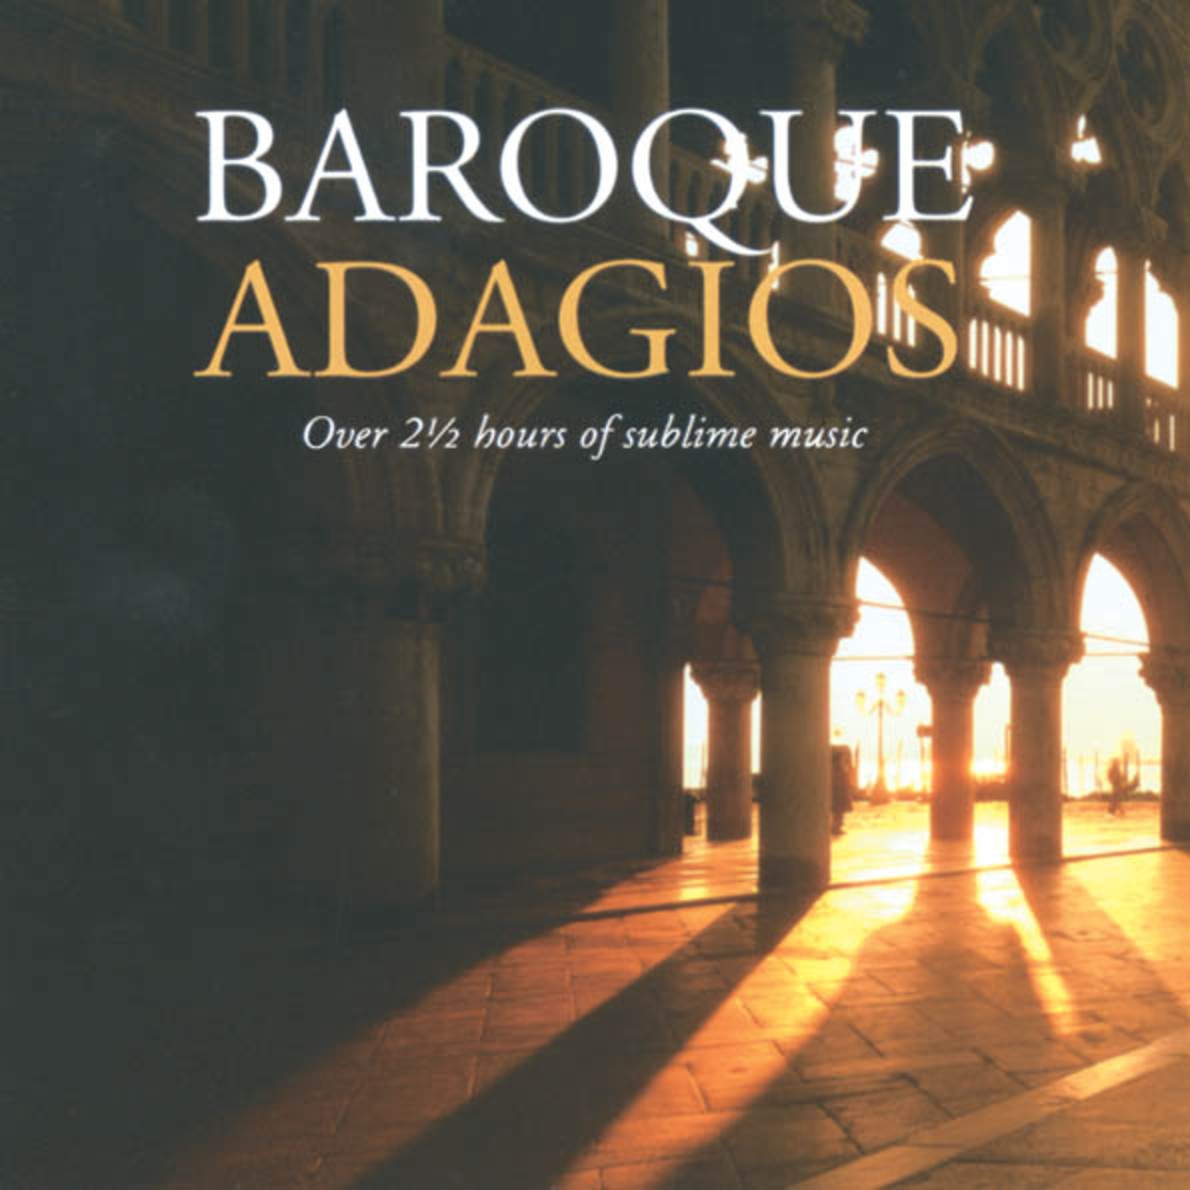 Albinoni: Adagio for Strings and Organ in G minor